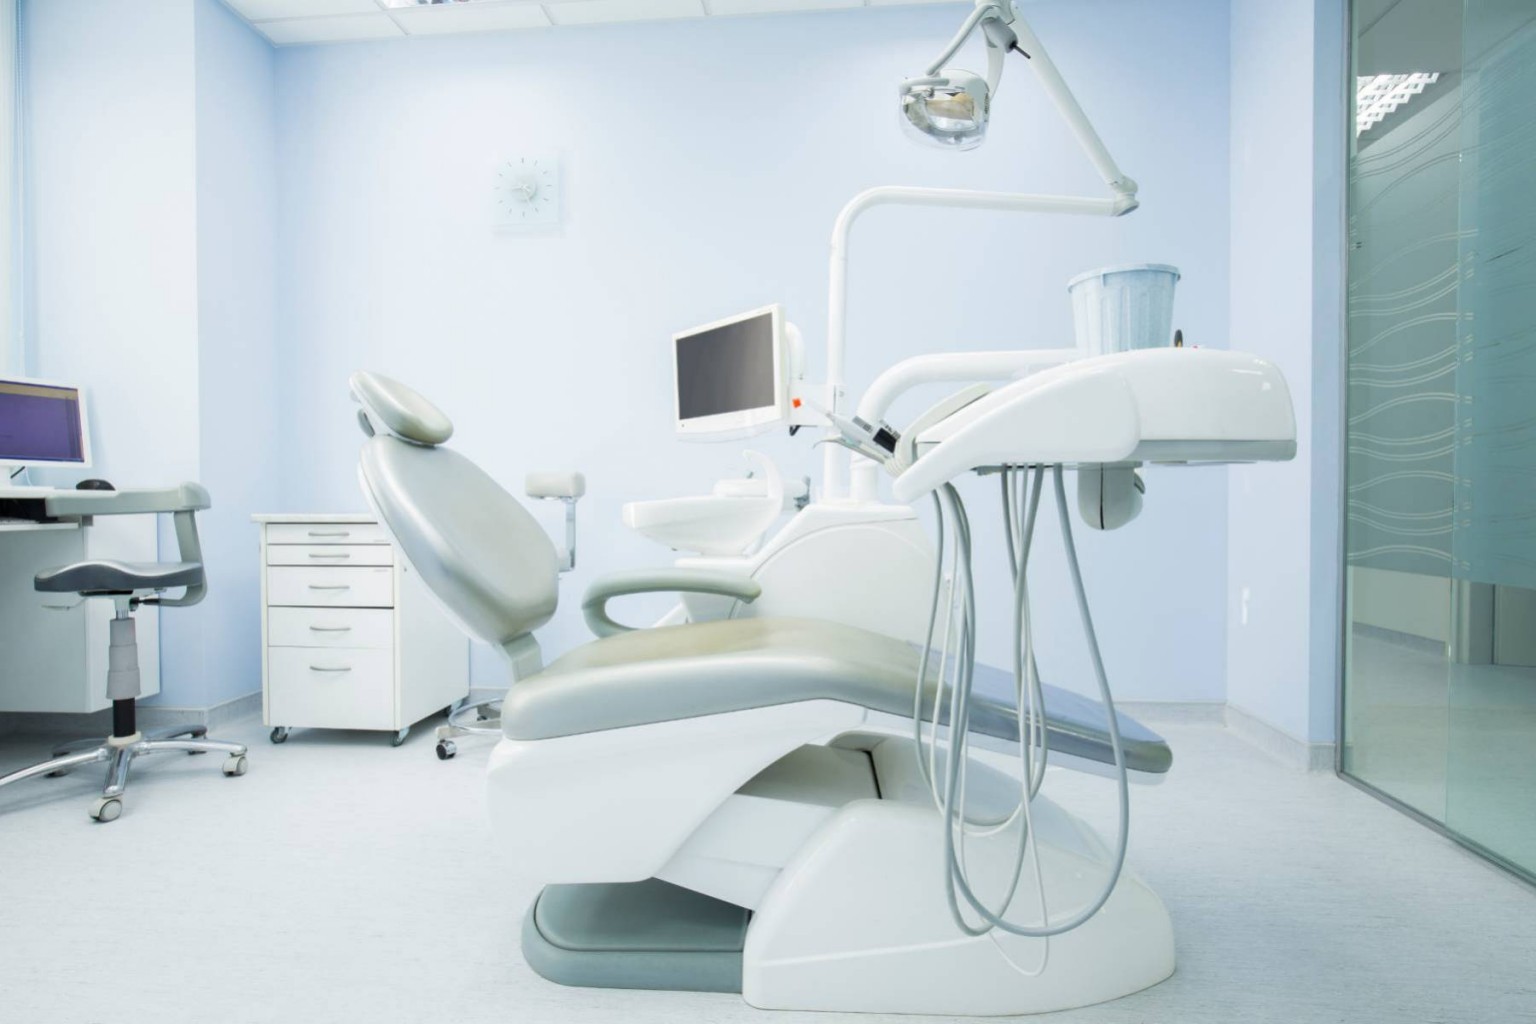 Las consultas dentales son parte del cuidado de salud esencial, vea por qué